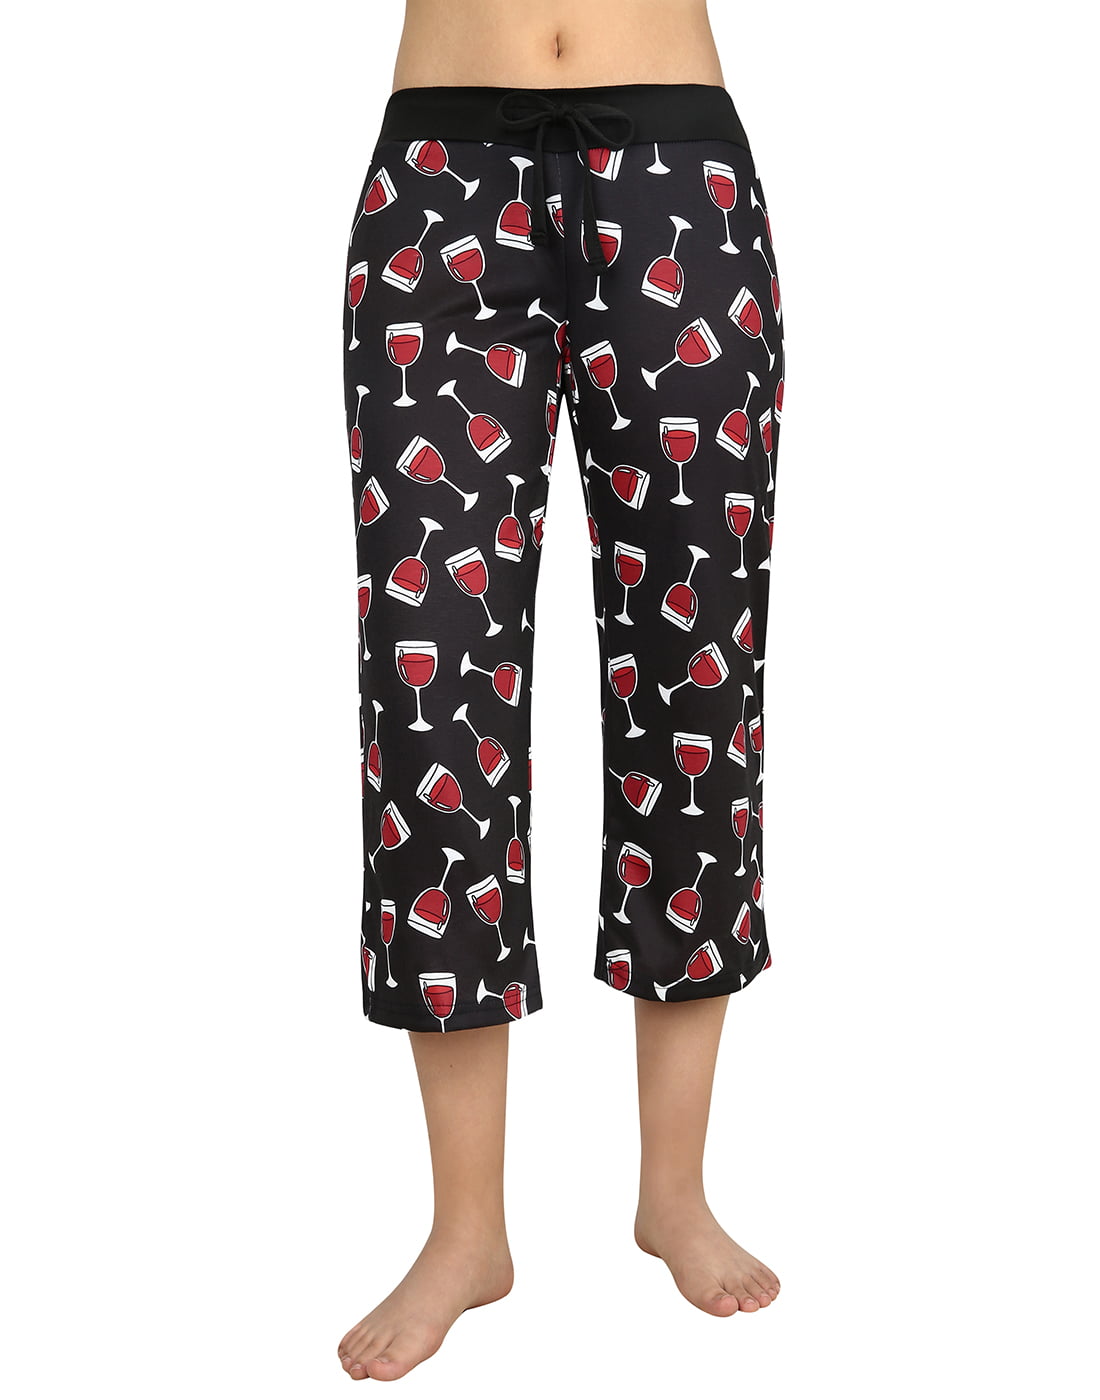 Women Pajama Bottom Capri Lounge Pants Soft Comfy Home Sleepwear with Pocket